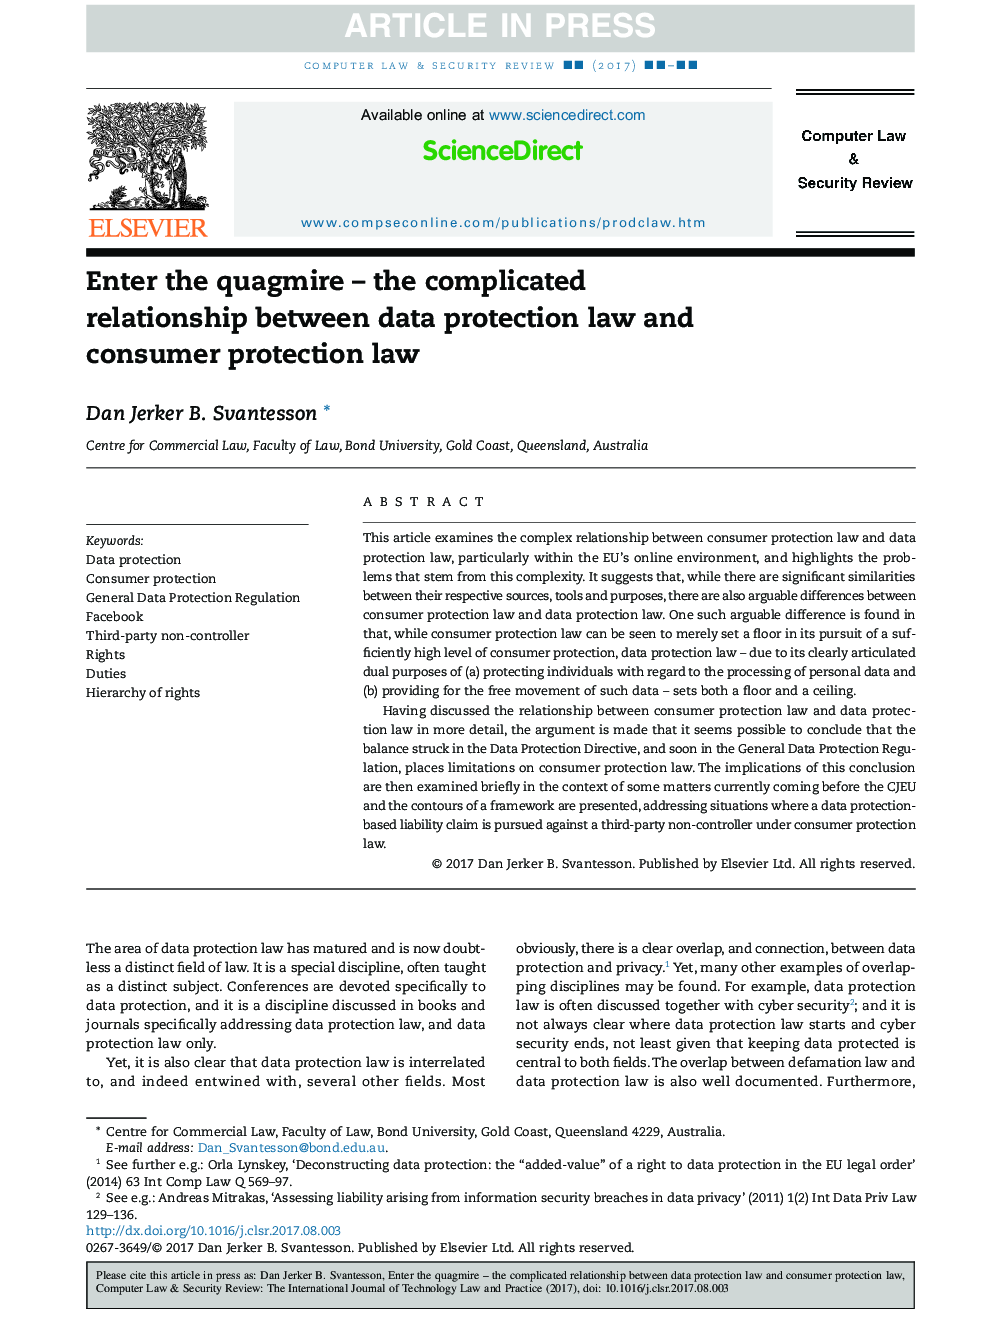 بلوز وارد کنید - رابطه پیچیده بین قانون حفاظت از اطلاعات و قانون حمایت از مصرف کننده 